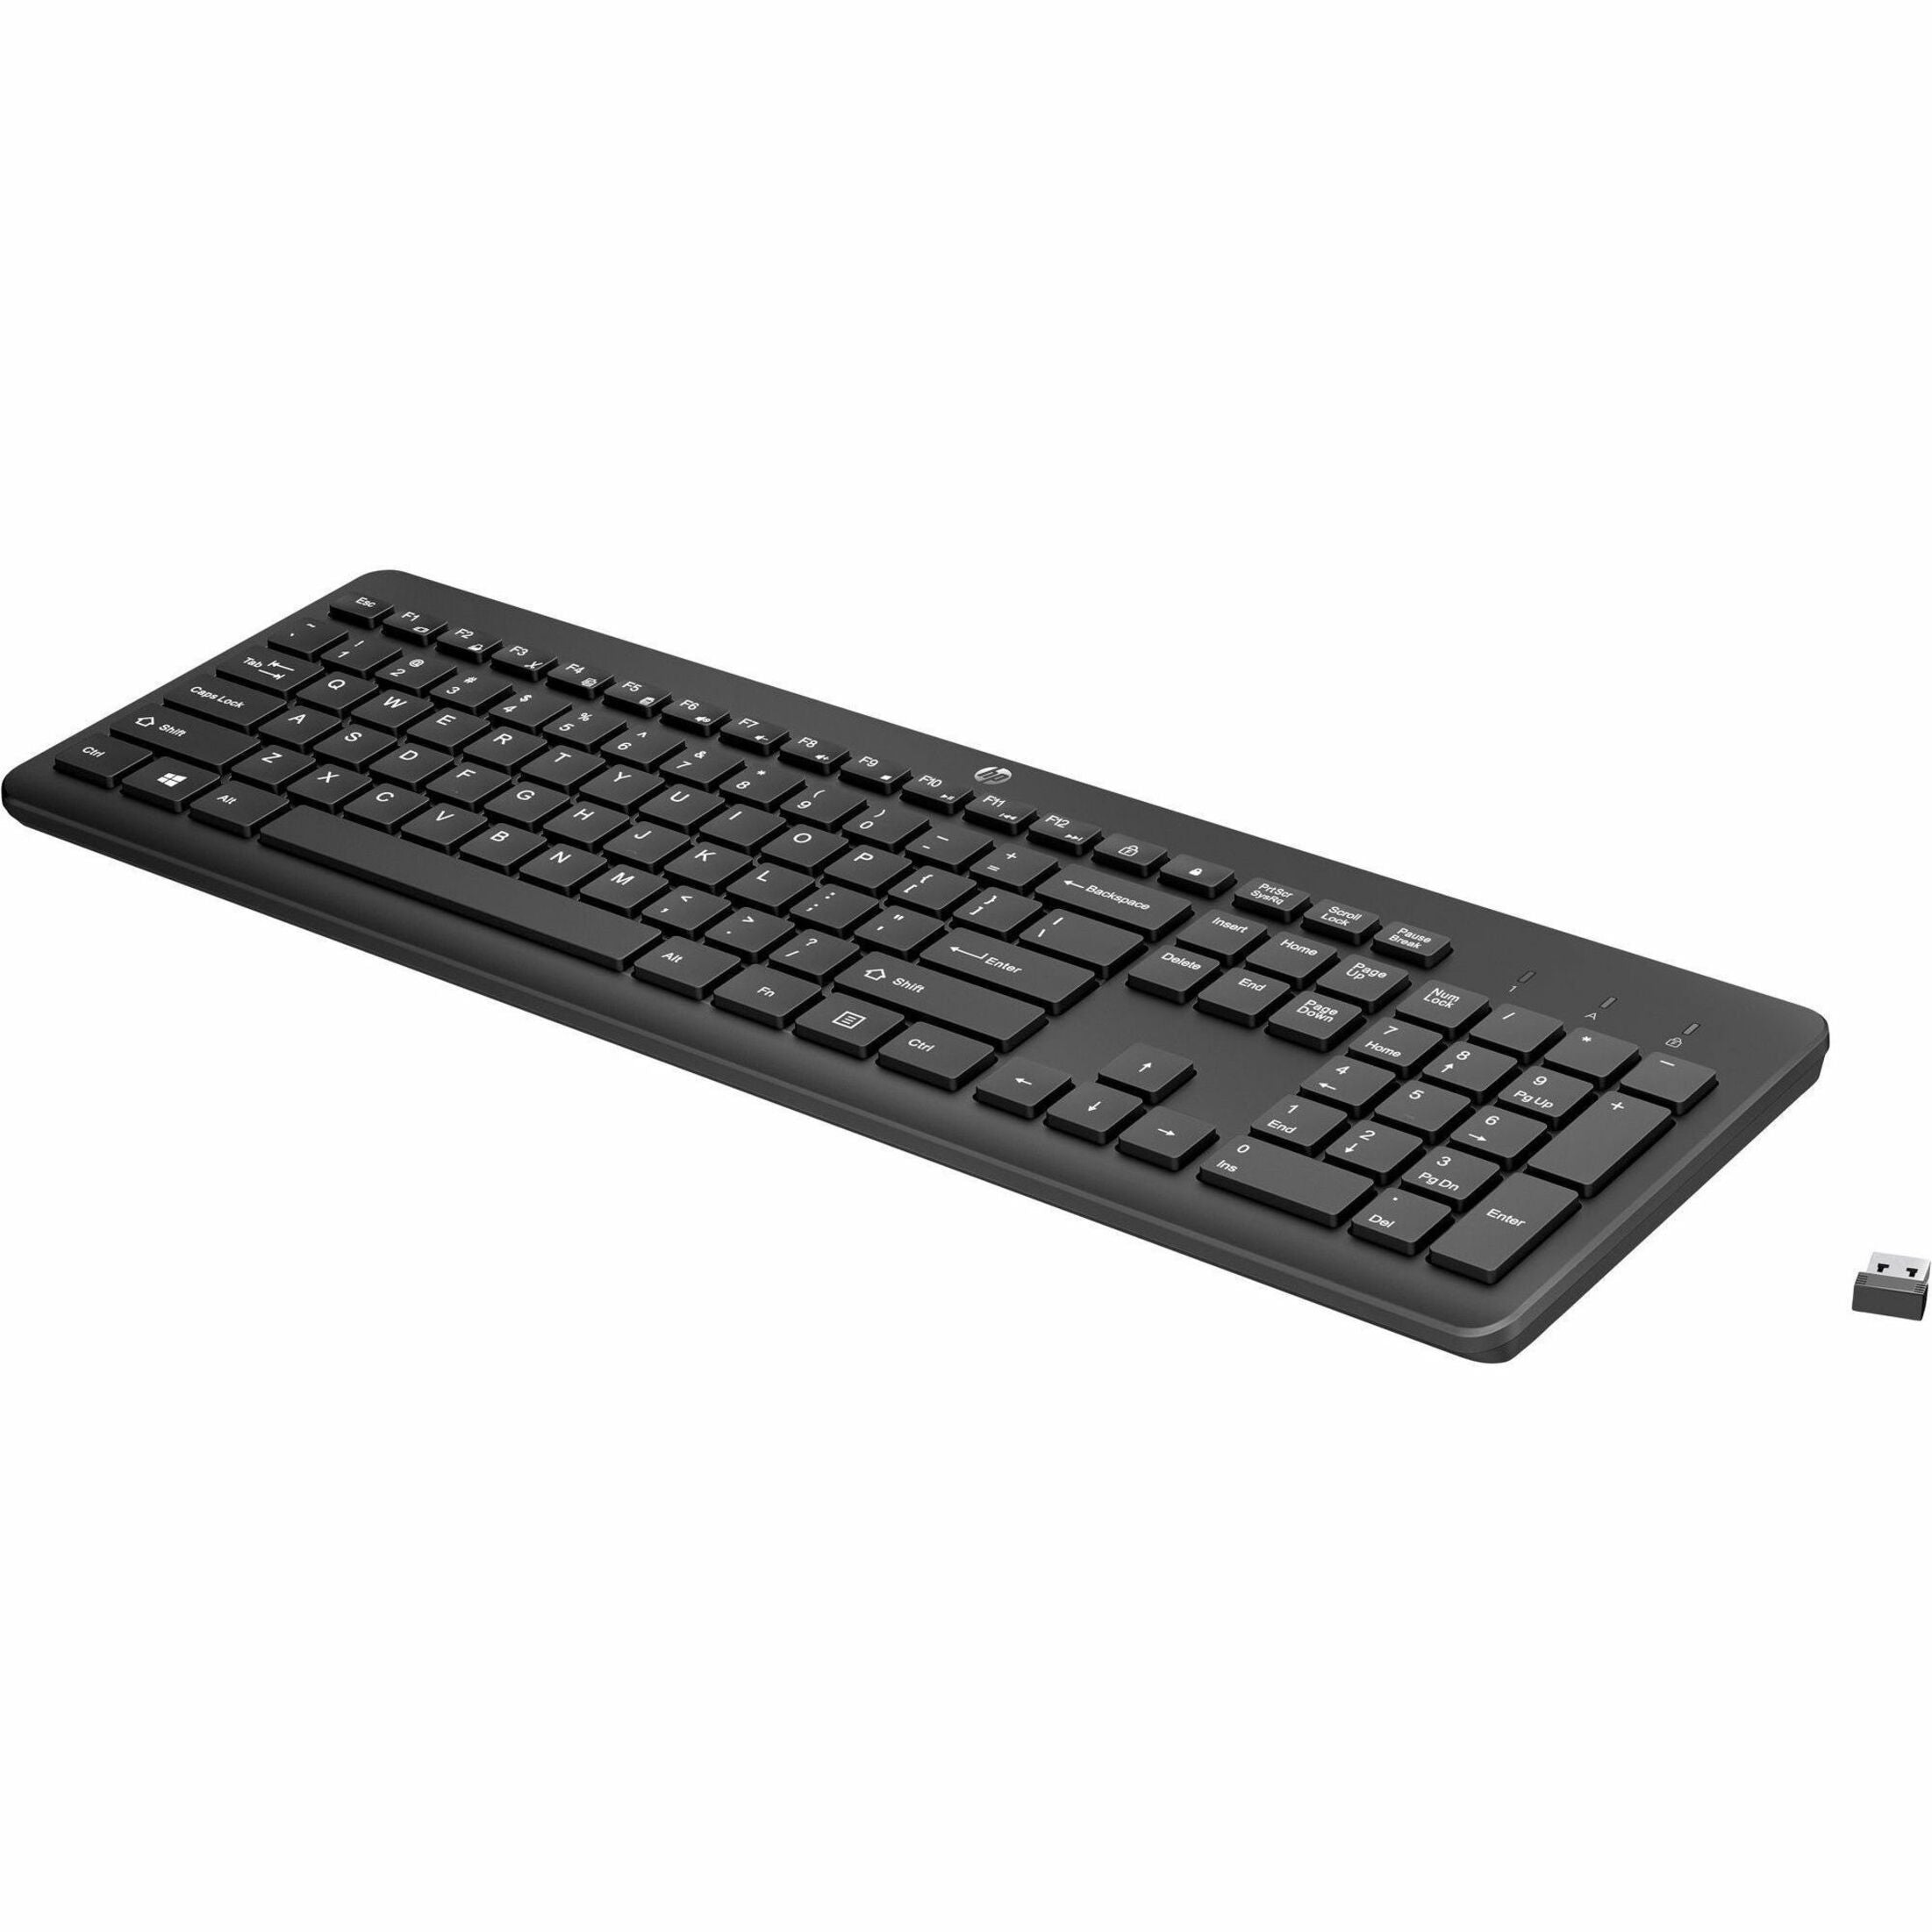 HP 230 Wireless Keyboard, Full-size Keyboard, Low-profile Keys, Quiet Keys, Numeric Keypad, Low Noise, Adjustable Tilt